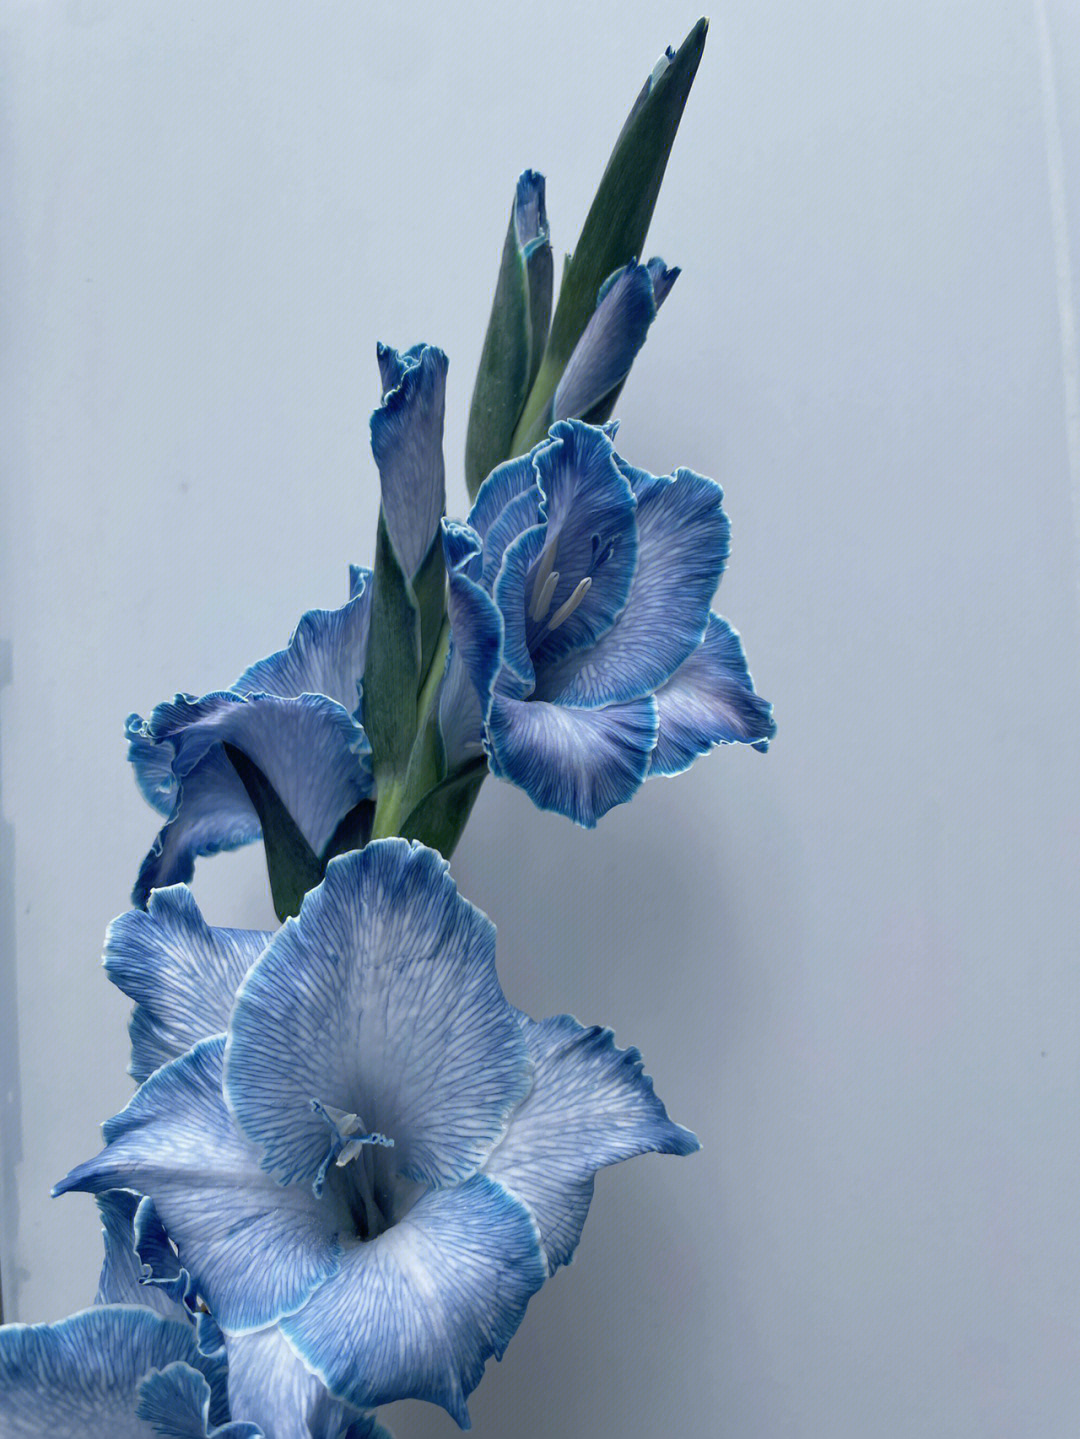 吸色剑兰,花纹清晰,颜色更有层次,花边轮廓蓝白相间,整体花色形成渐变